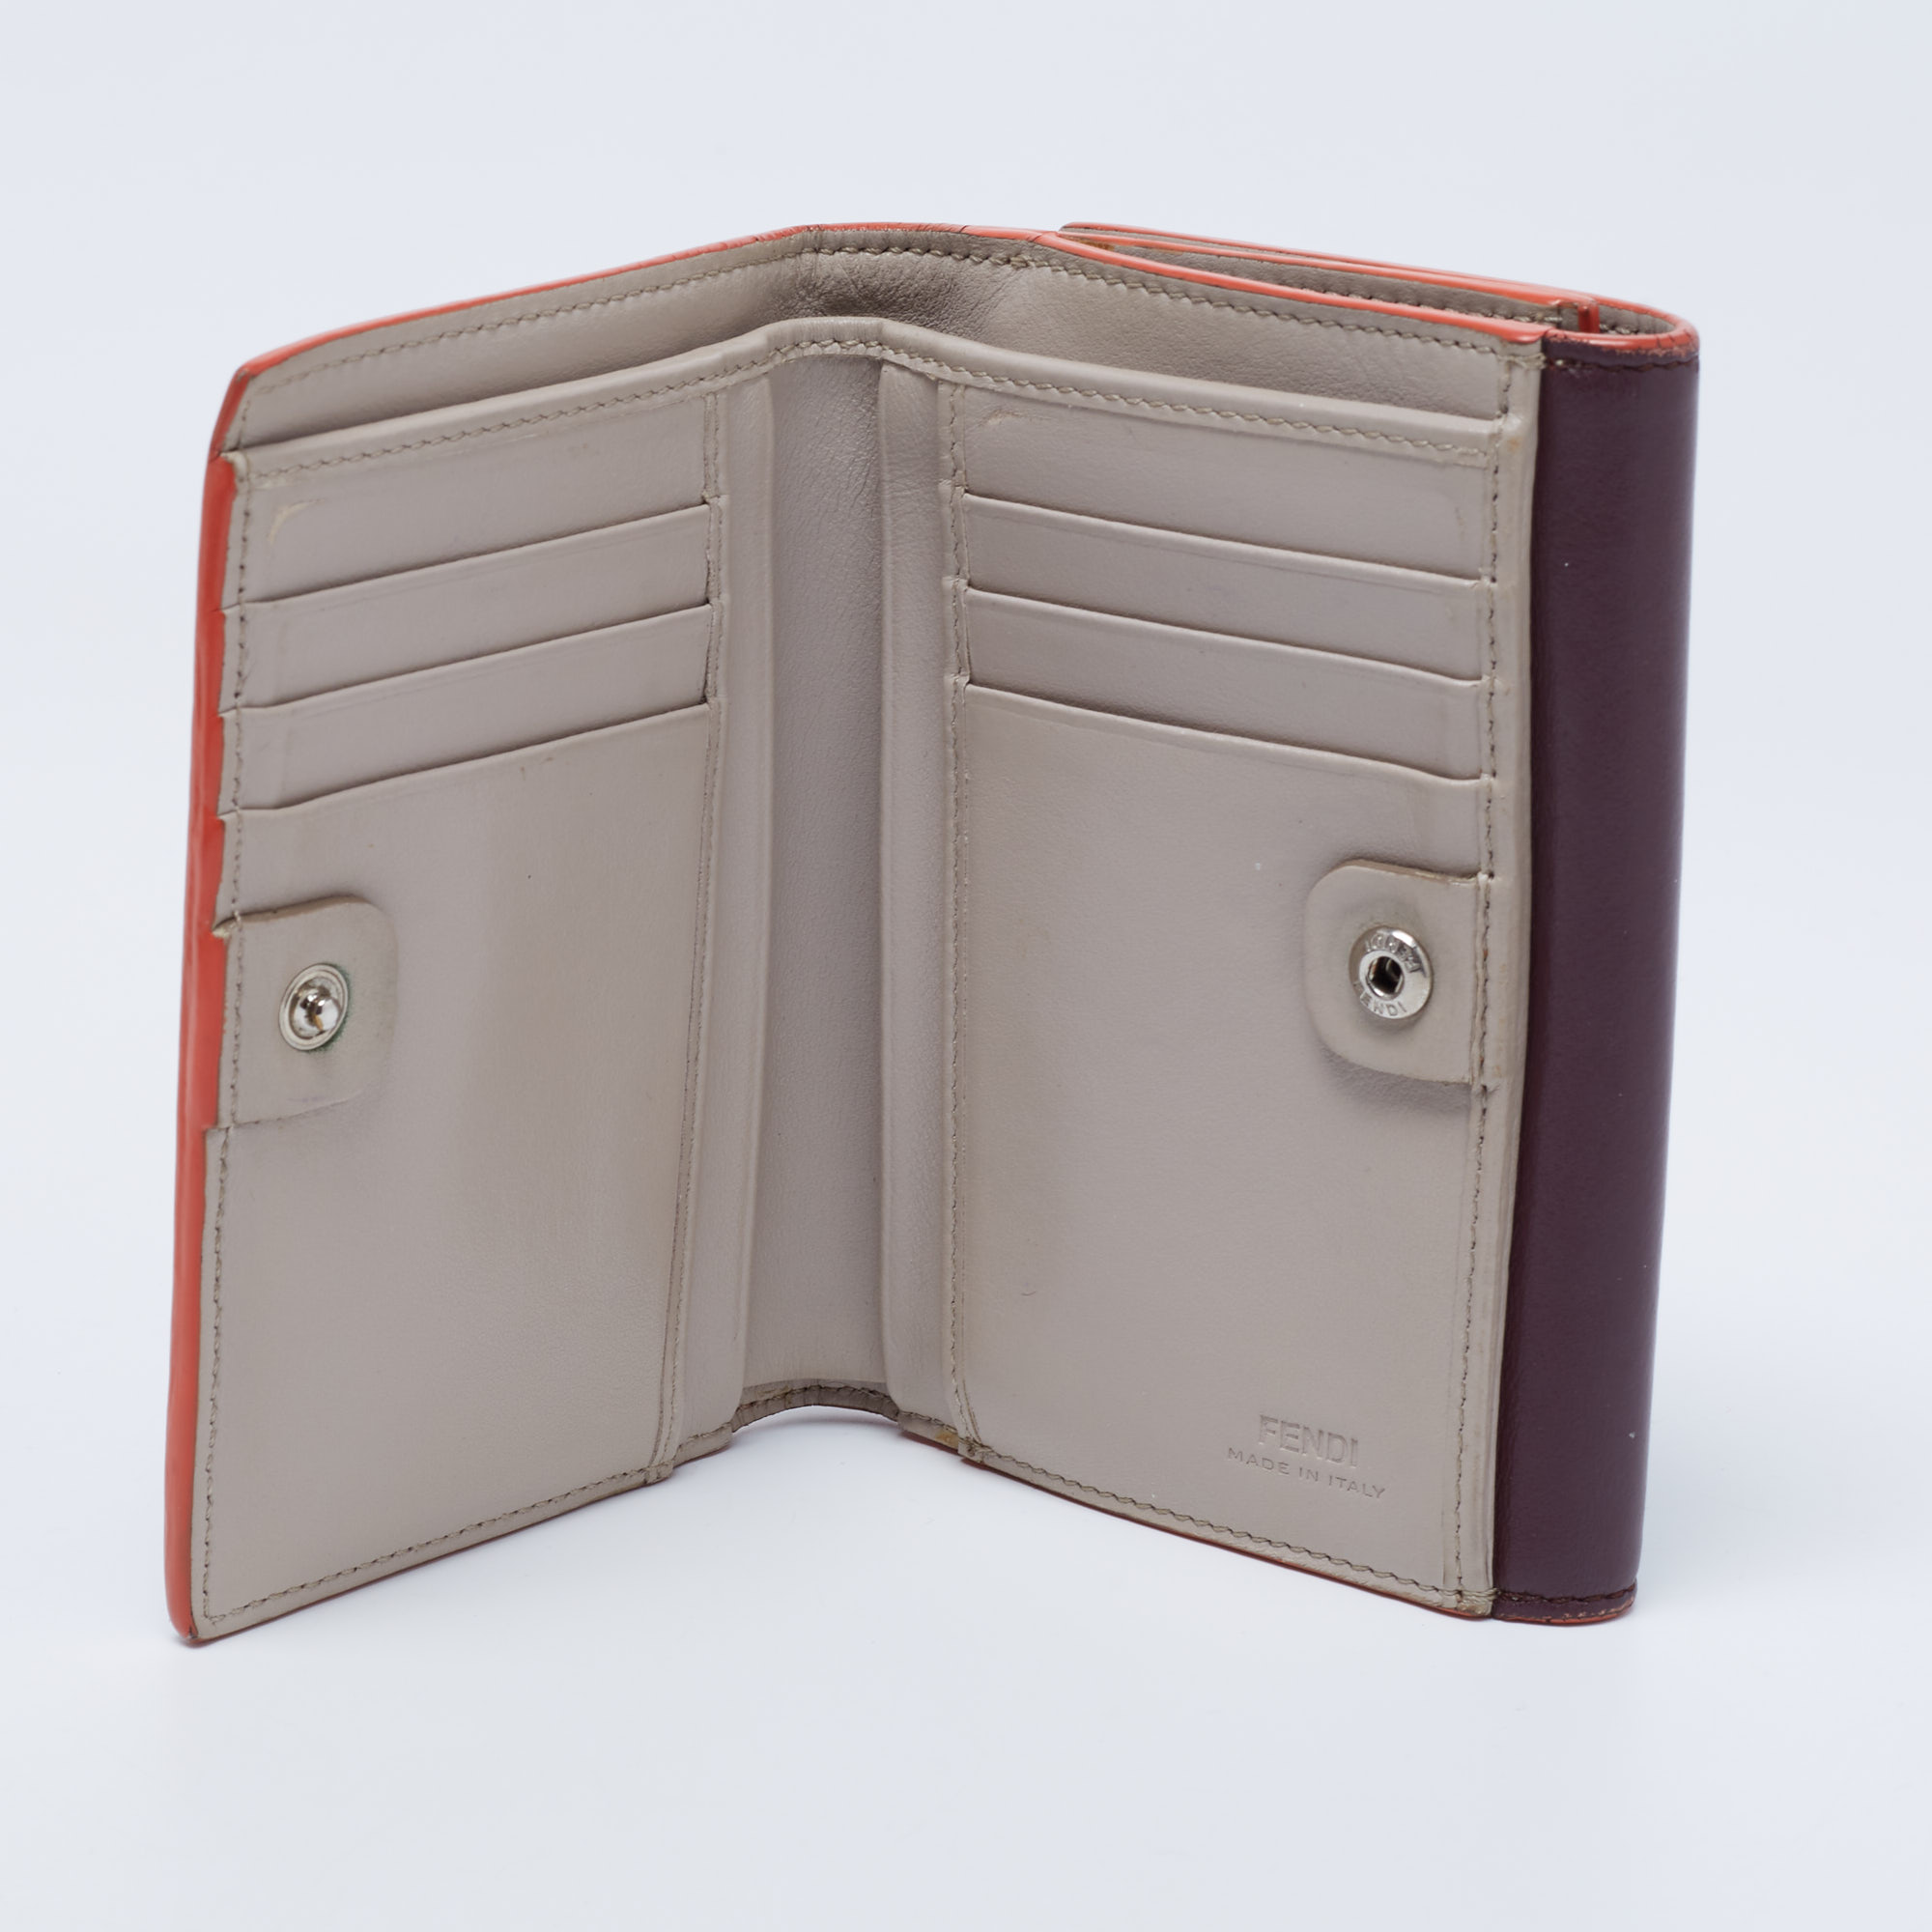 

Fendi Burgundy Leather Peekaboo Compact Wallet